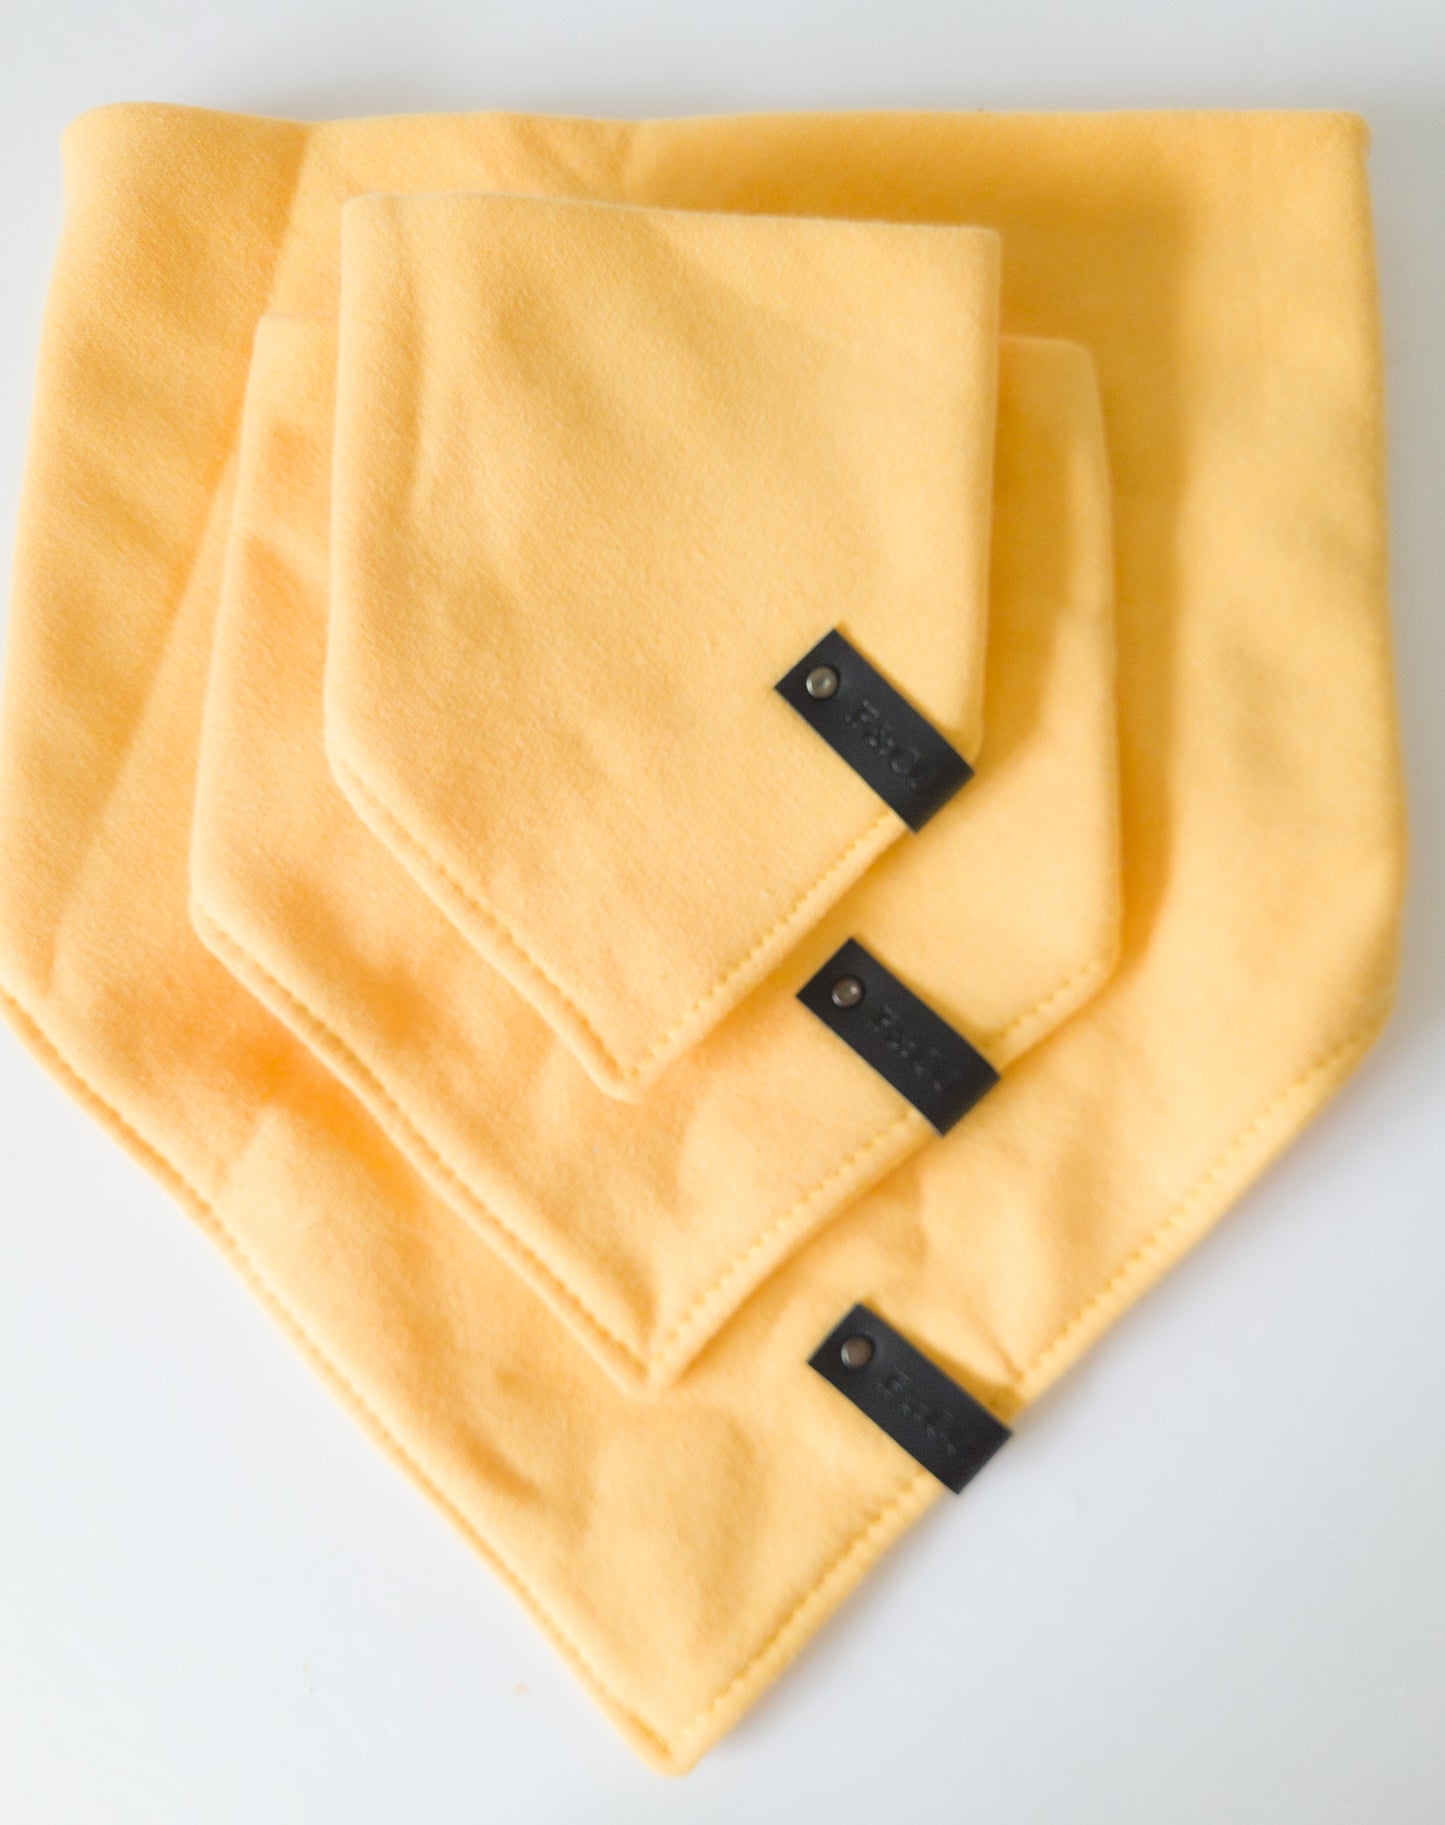 Différentes grandeurs de bandanas de coton ouaté de couleur jaune blé avec étiquettes de cuir végan noir.